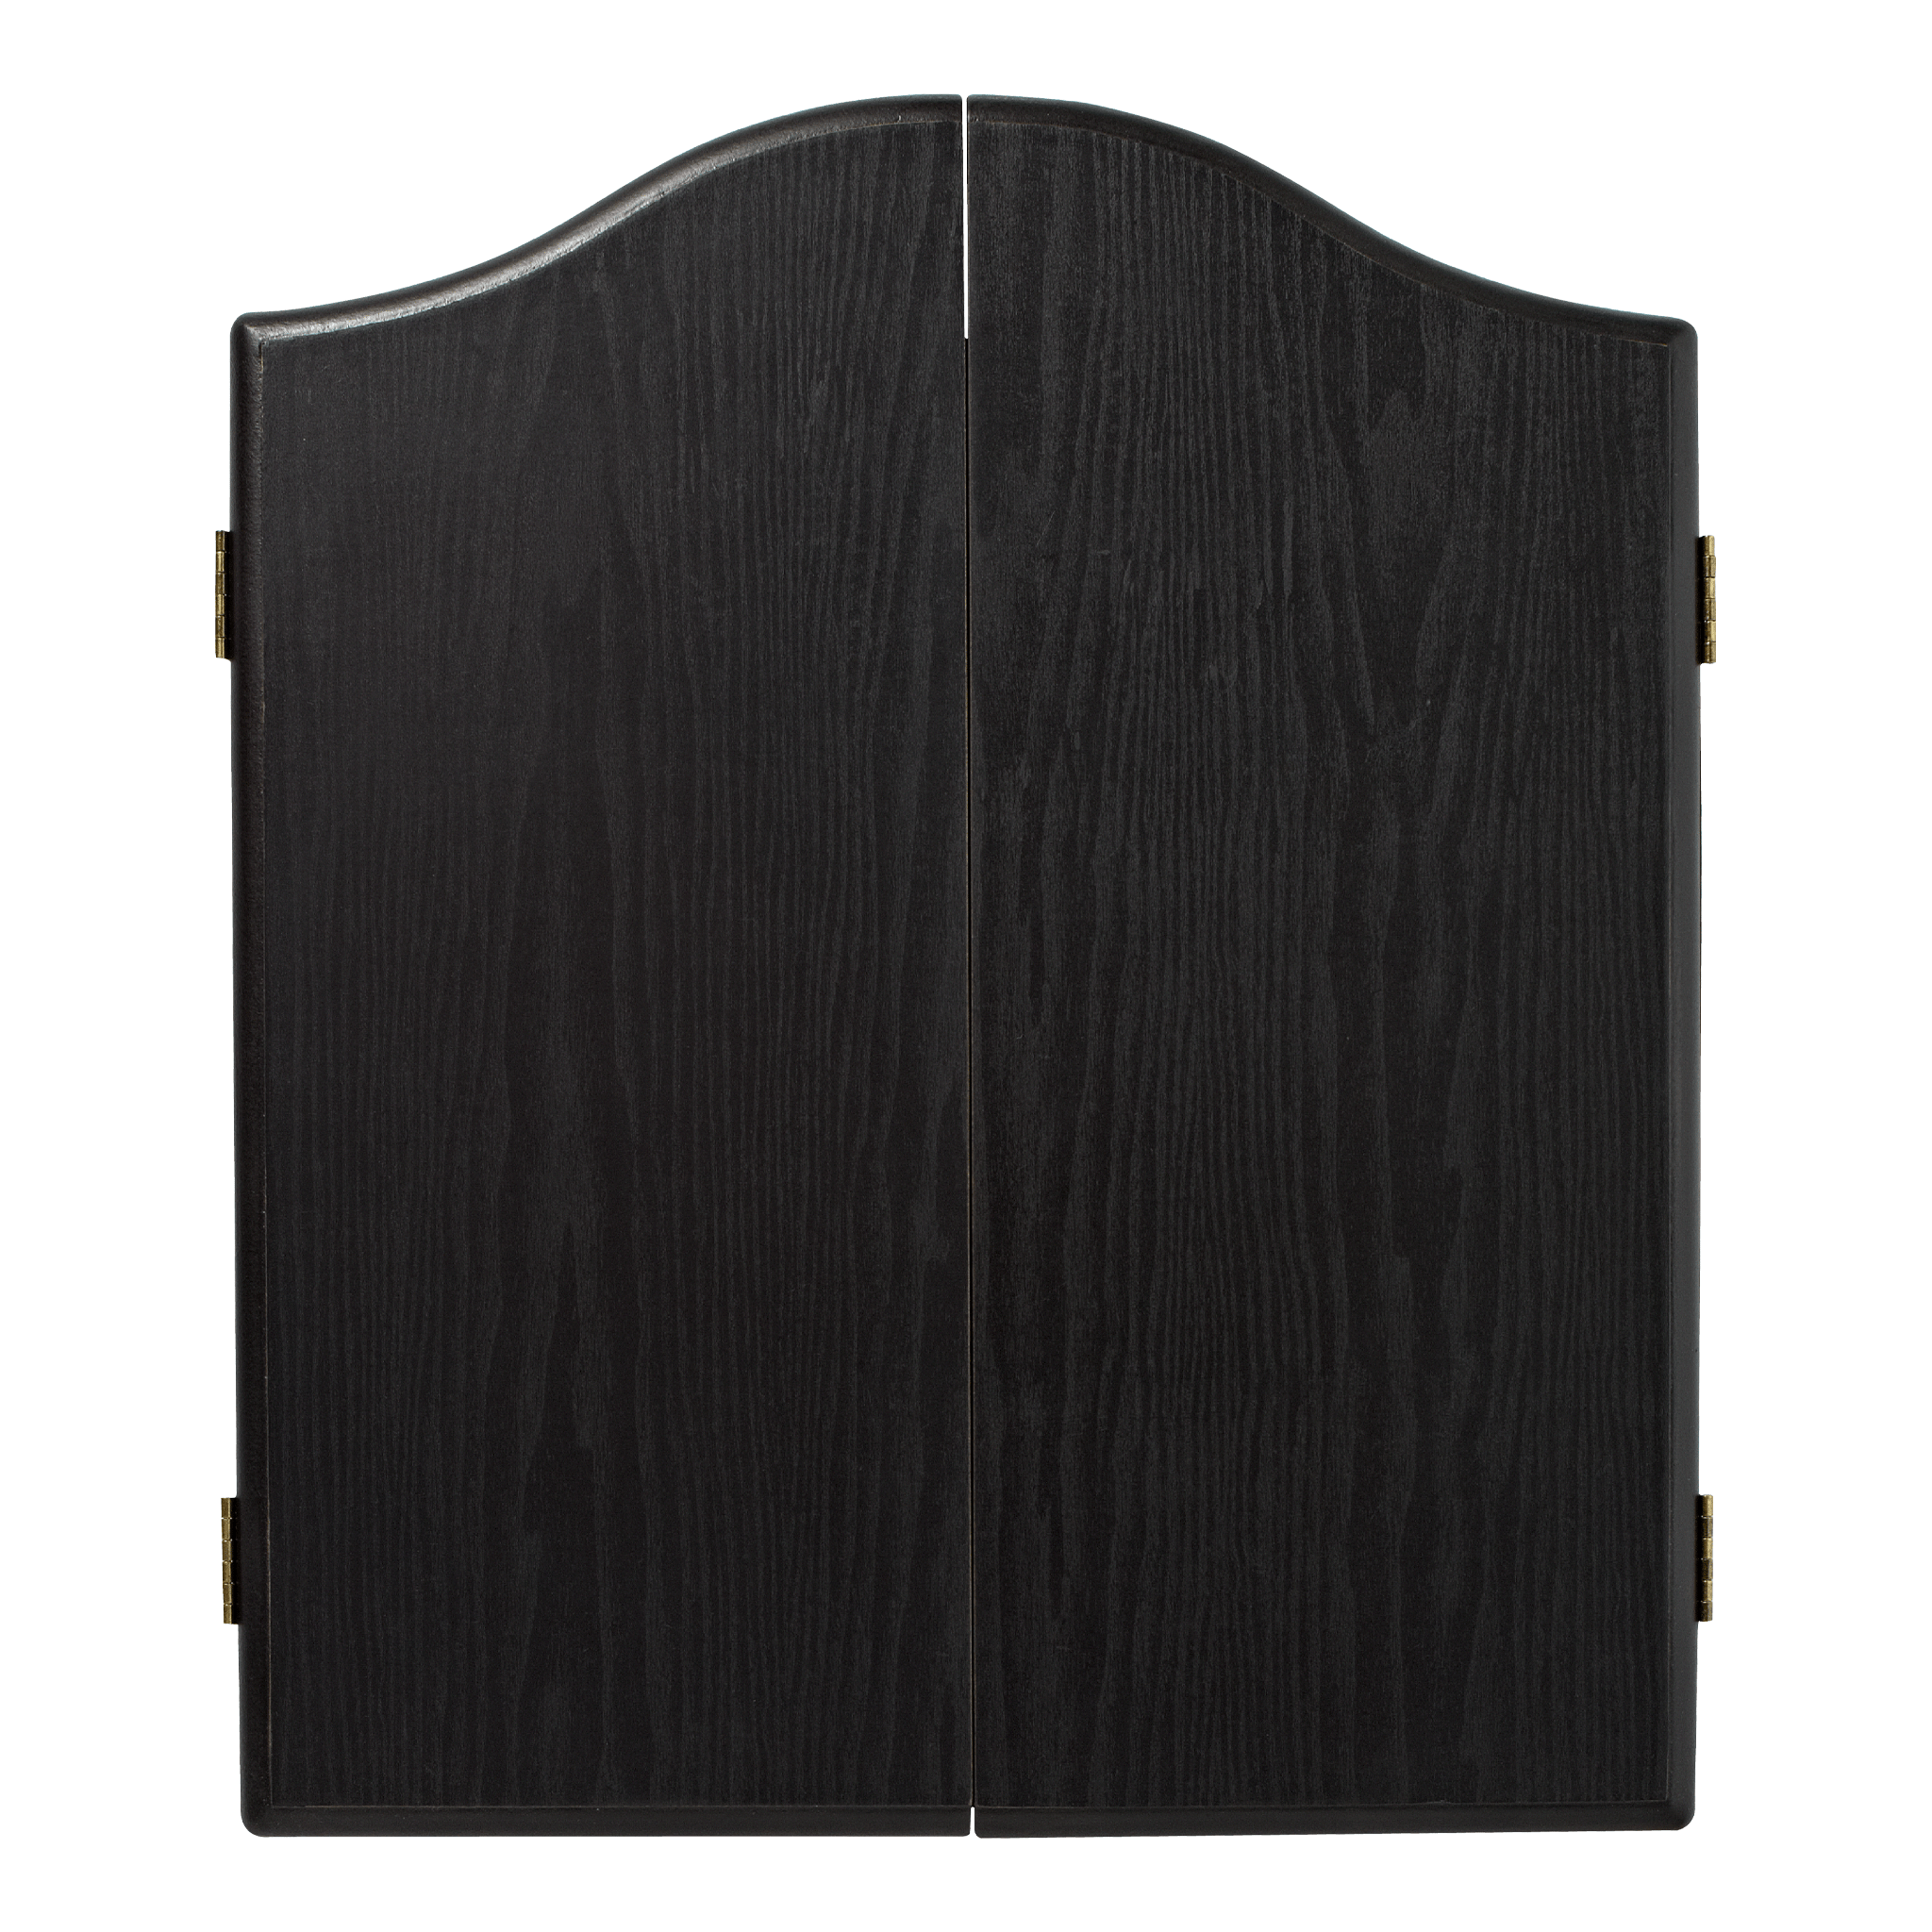 Winmau Winmau Dart Board Cabinet Black Boards